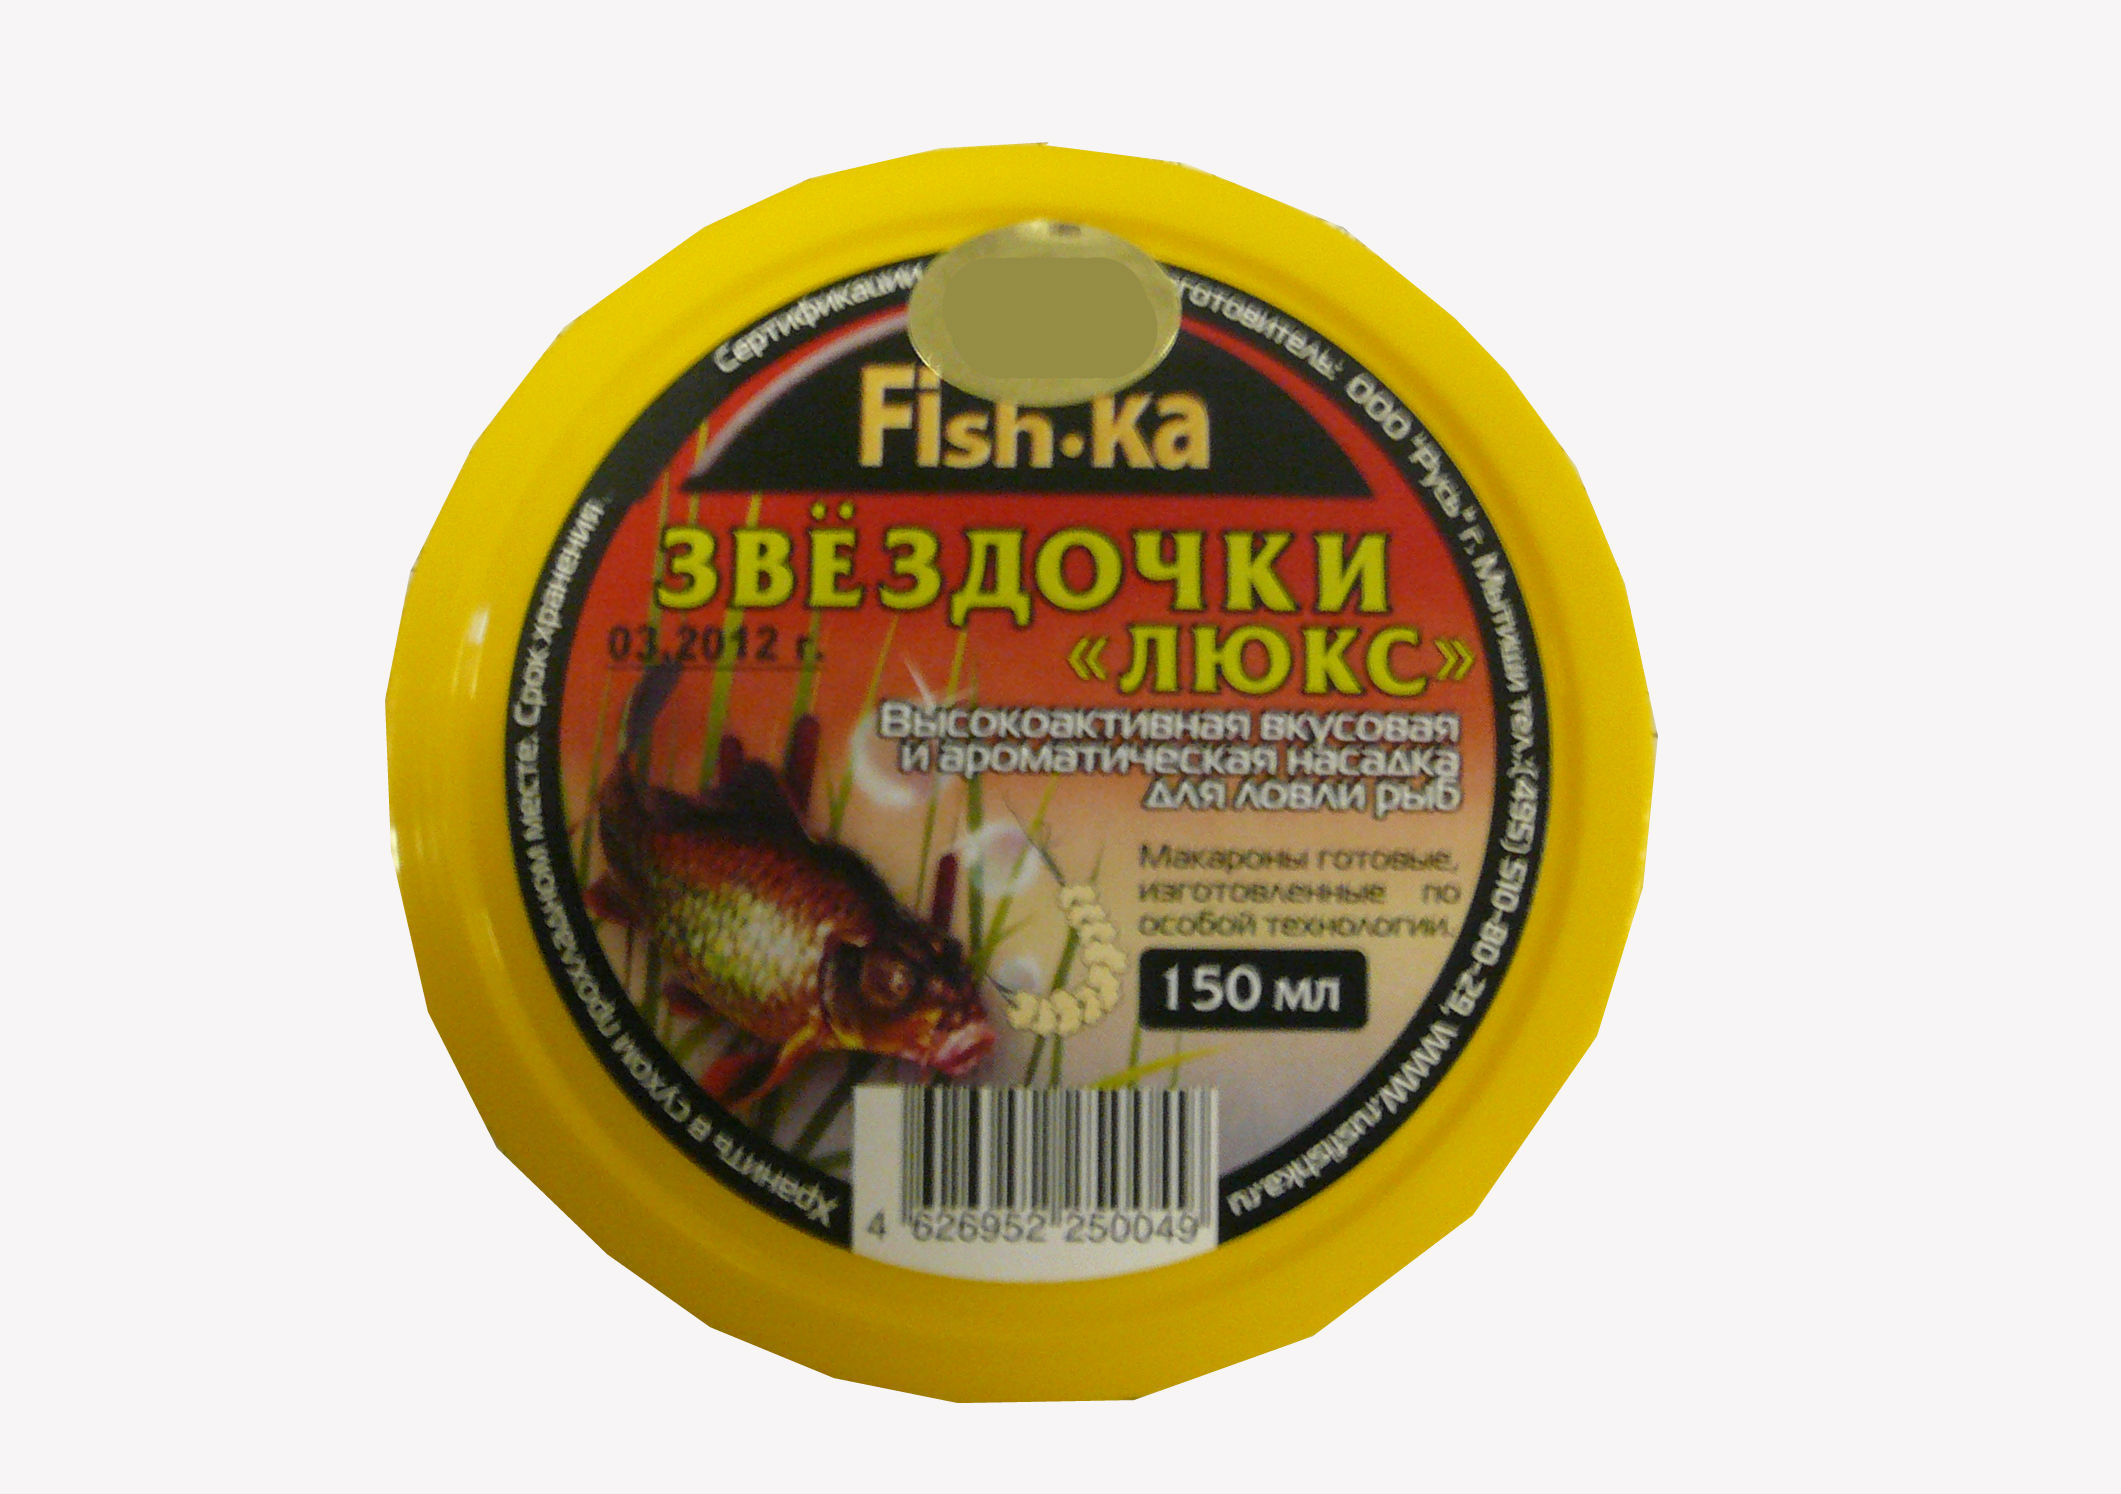 Макароны Fish-ka звёздочки (ваниль) 150мл.